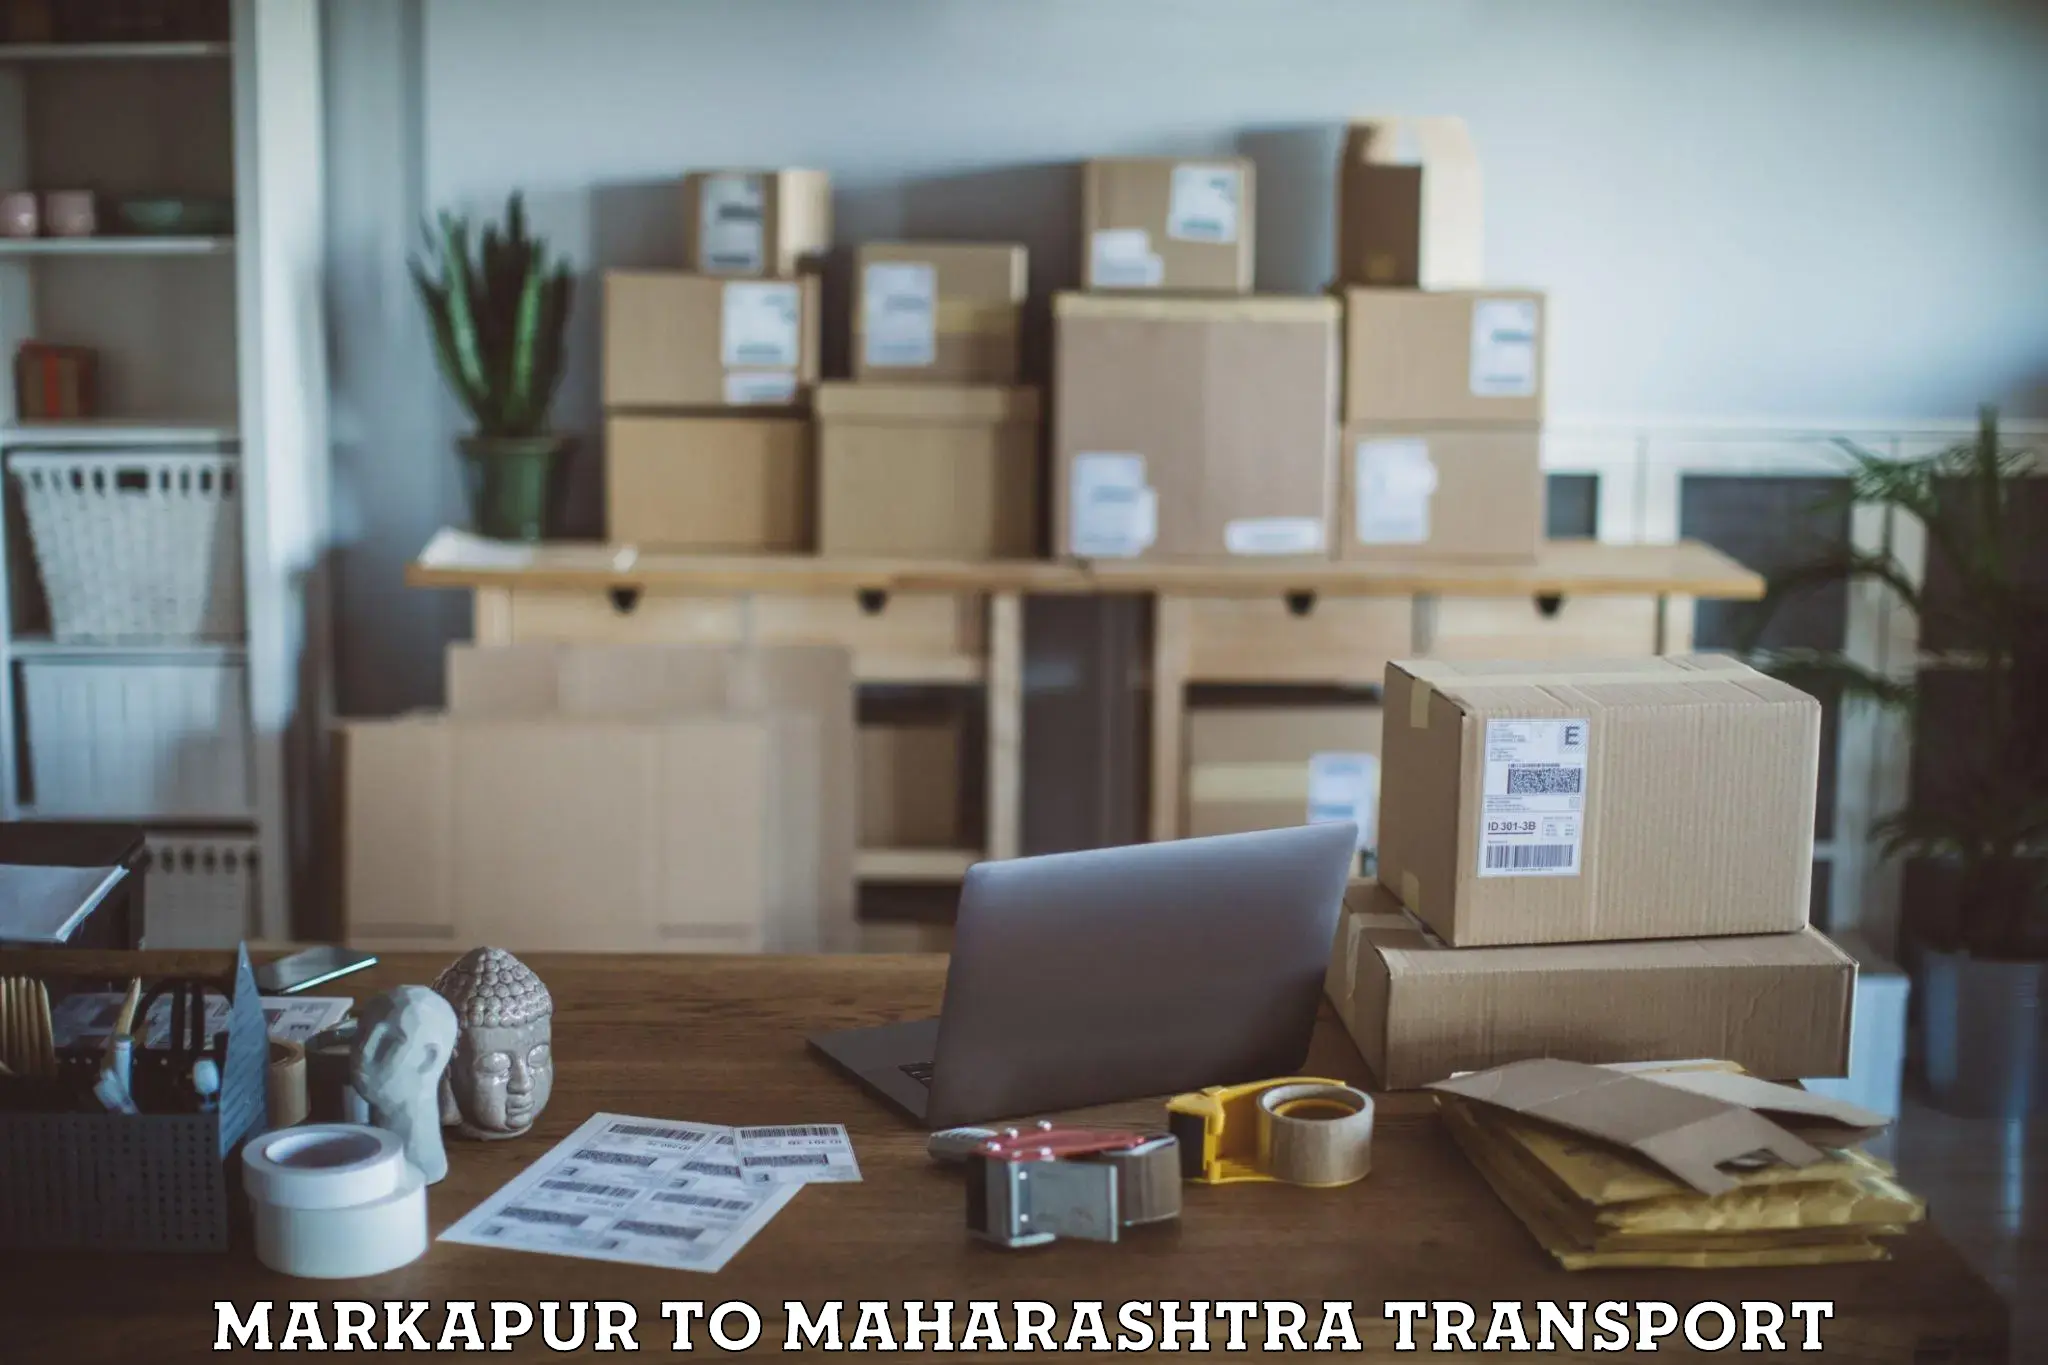 Container transport service Markapur to Borivali